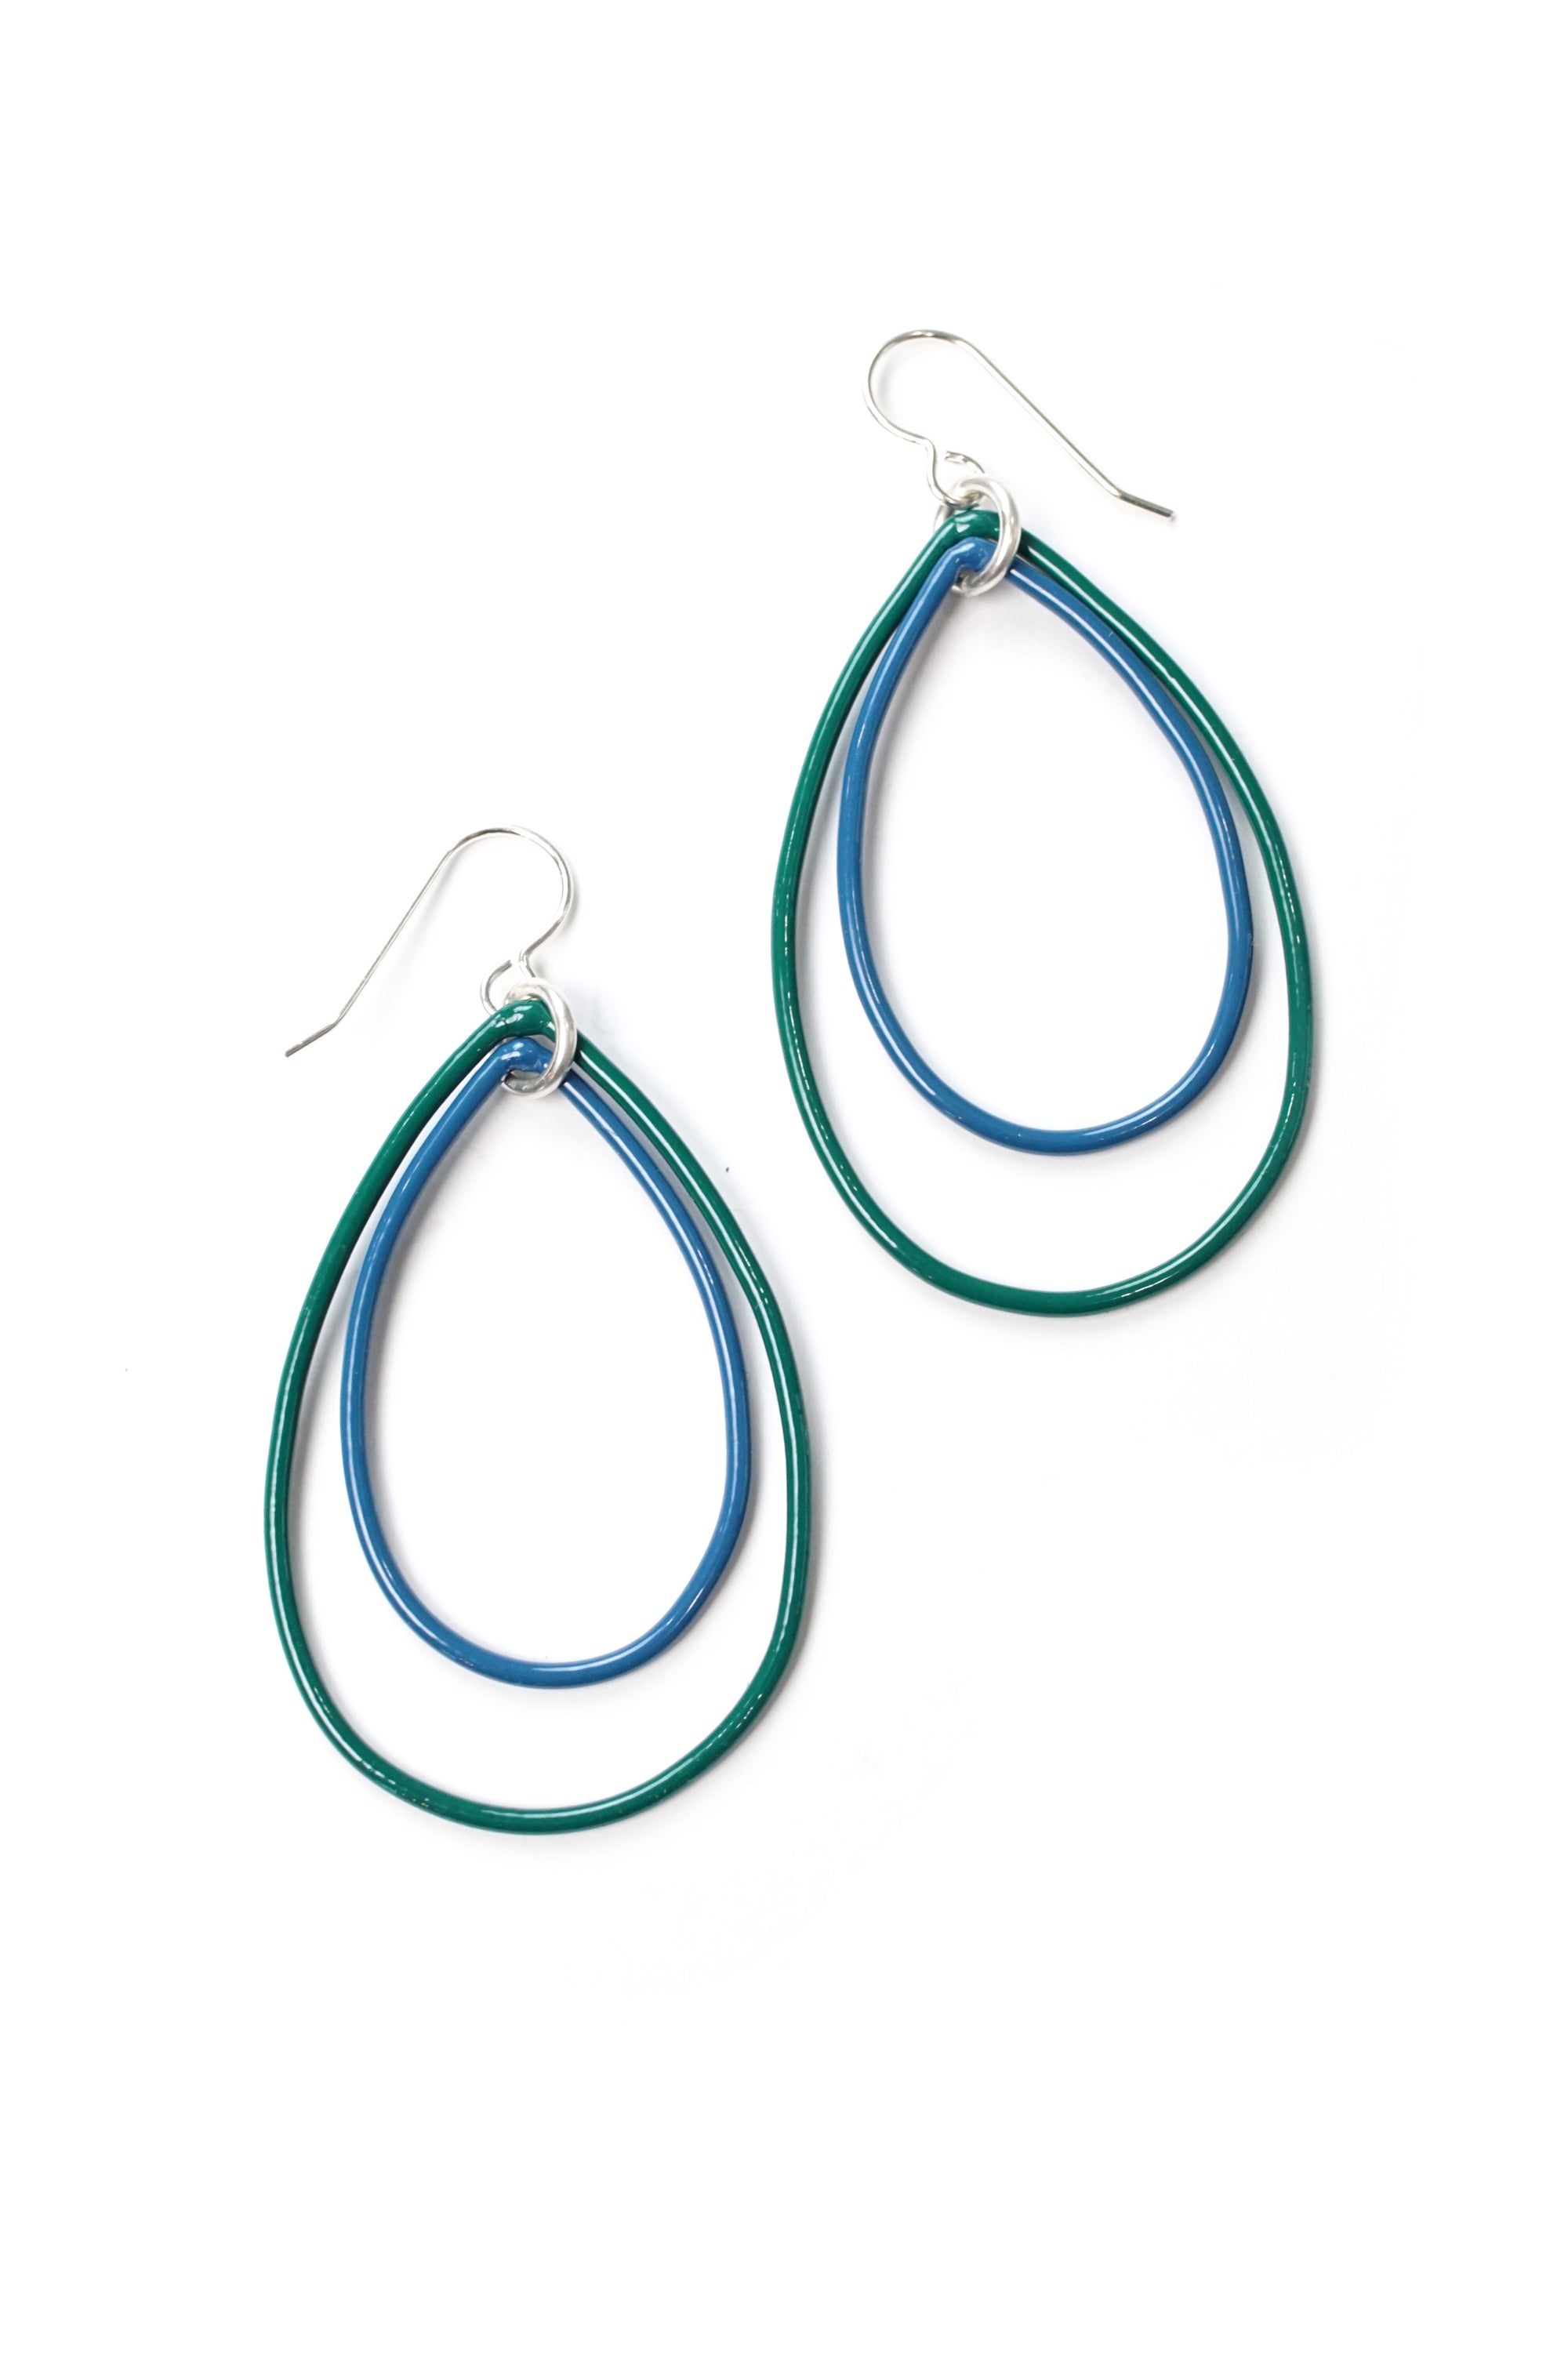 Rachel earrings in Emerald Green and Azure Blue